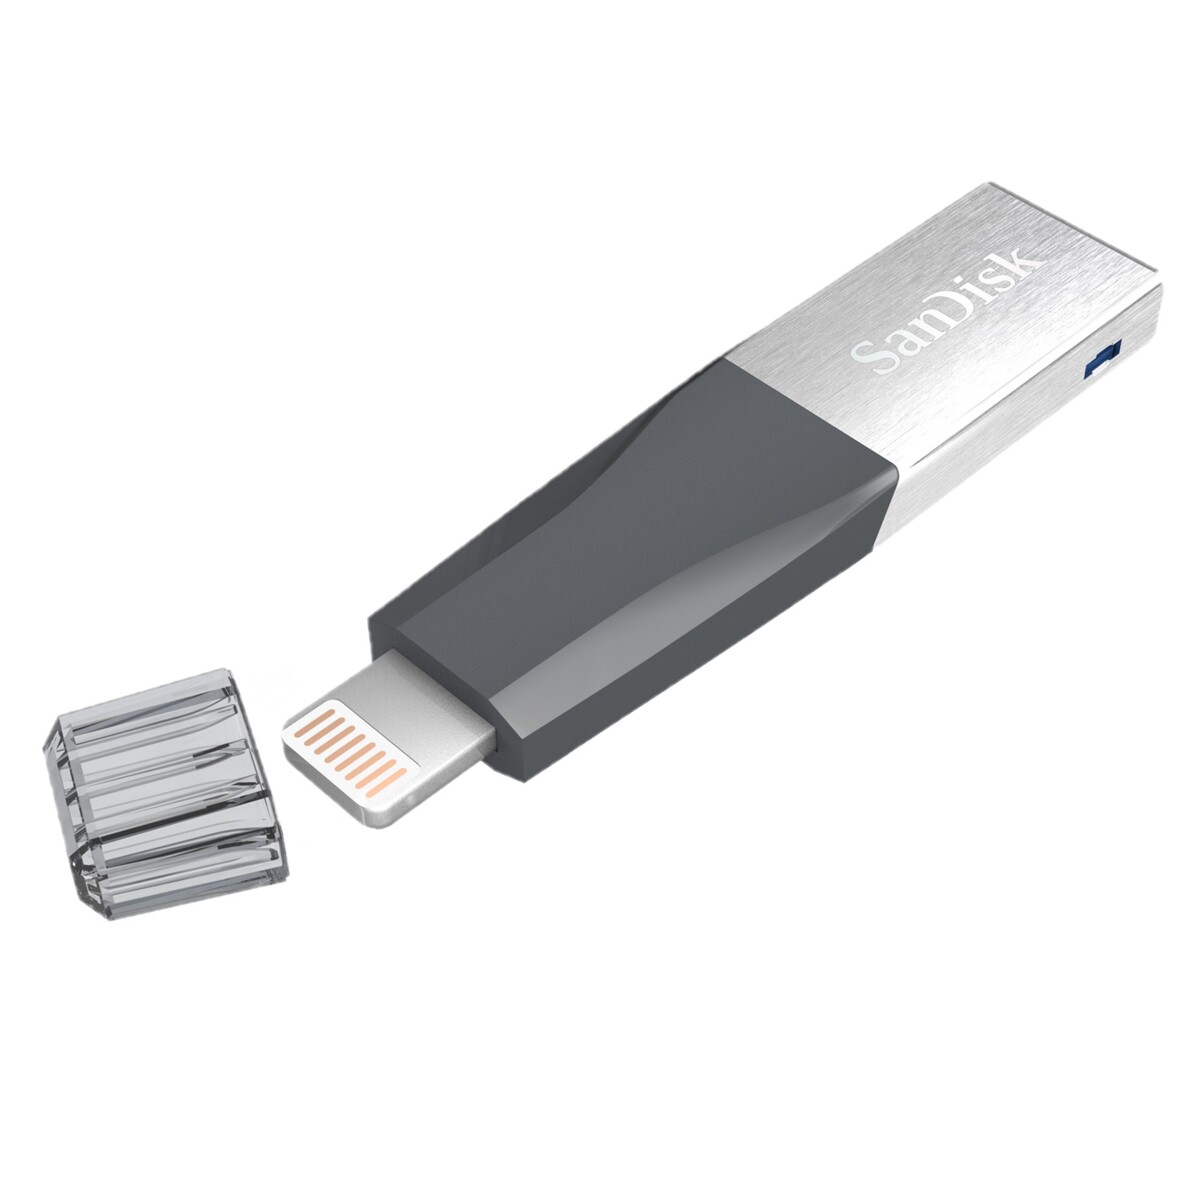 Sandisk Flash Drive iXpand Mini 32GB